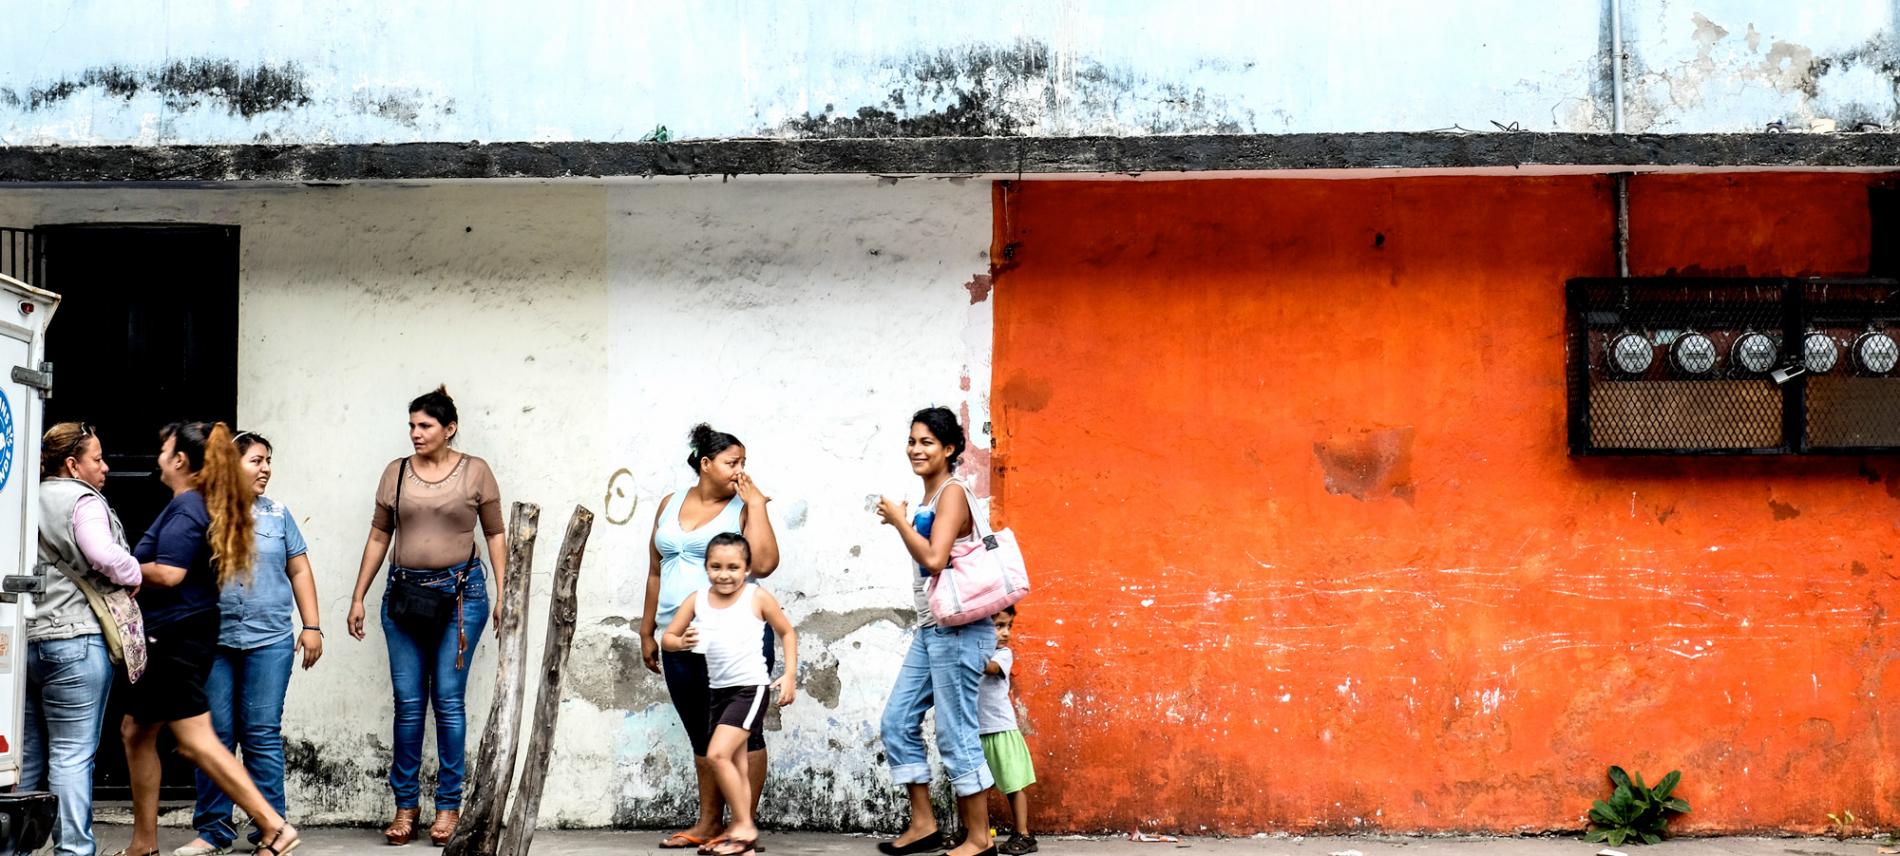 Besonders Immigrantinen leben in Mexiko in oft prekären Lebenssituationen. Foto: Nadja Massun